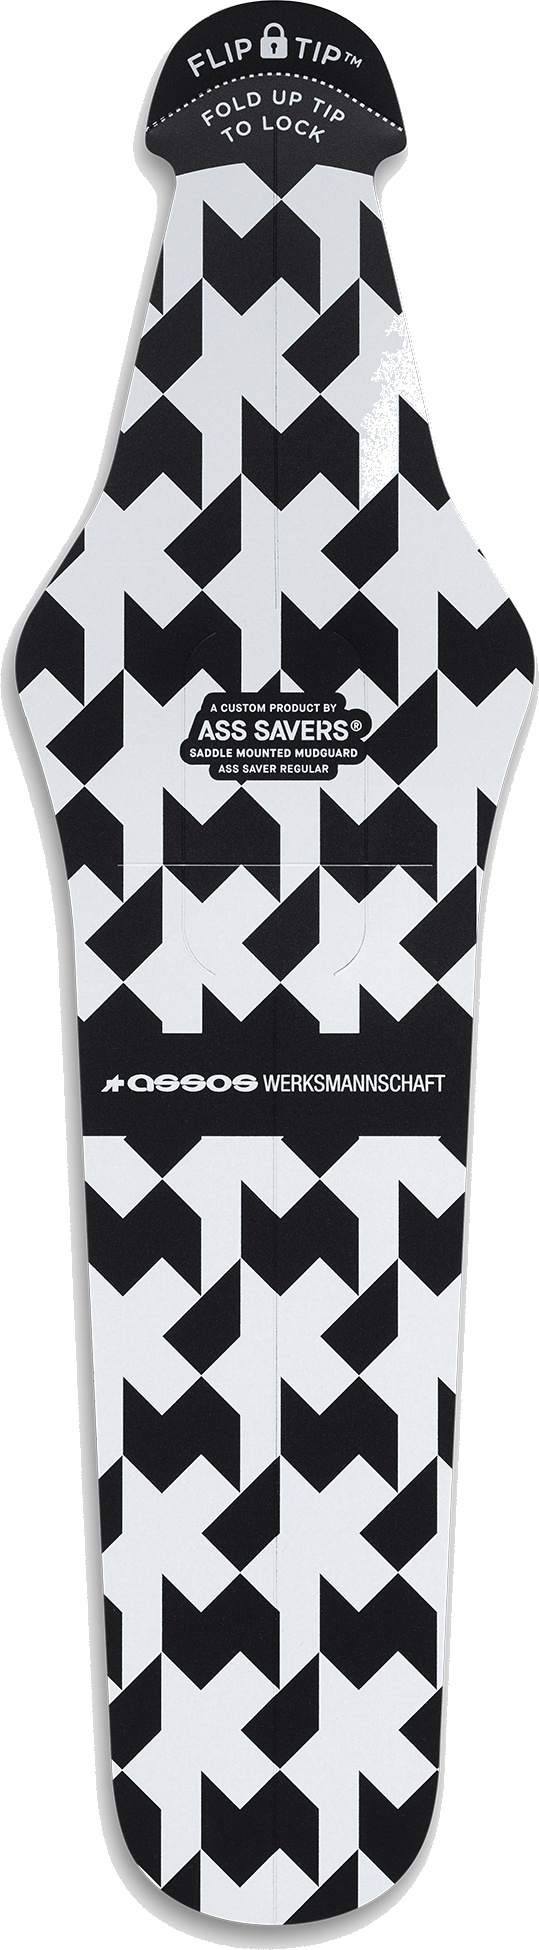 Assos Mud Guard / Ass Saver Monogram